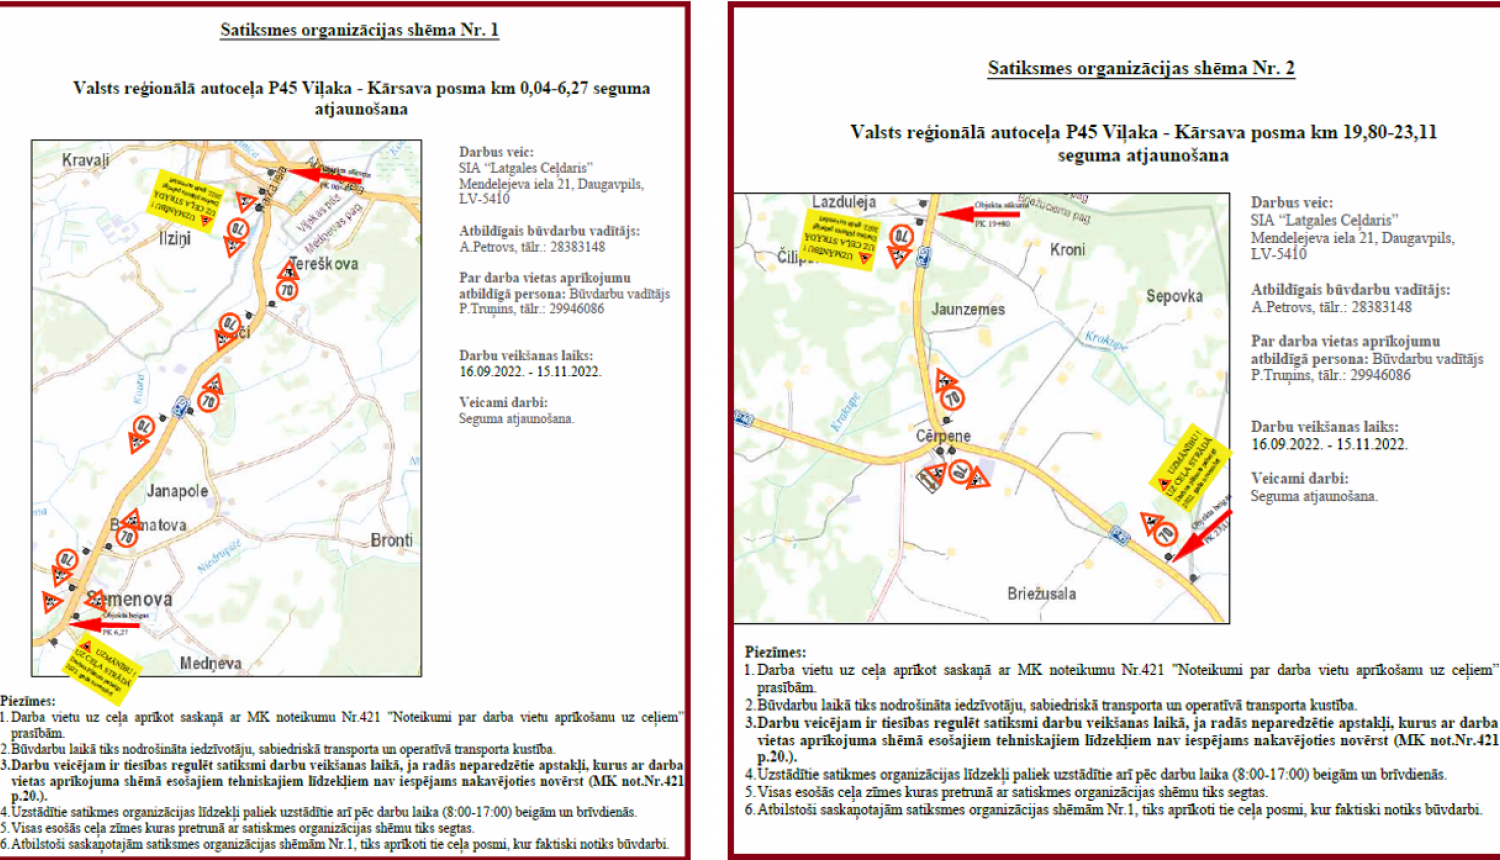 Informācija par valsts reģionālā autoceļa P45 Viļaka–Kārsava posmu segumu atjaunošanu